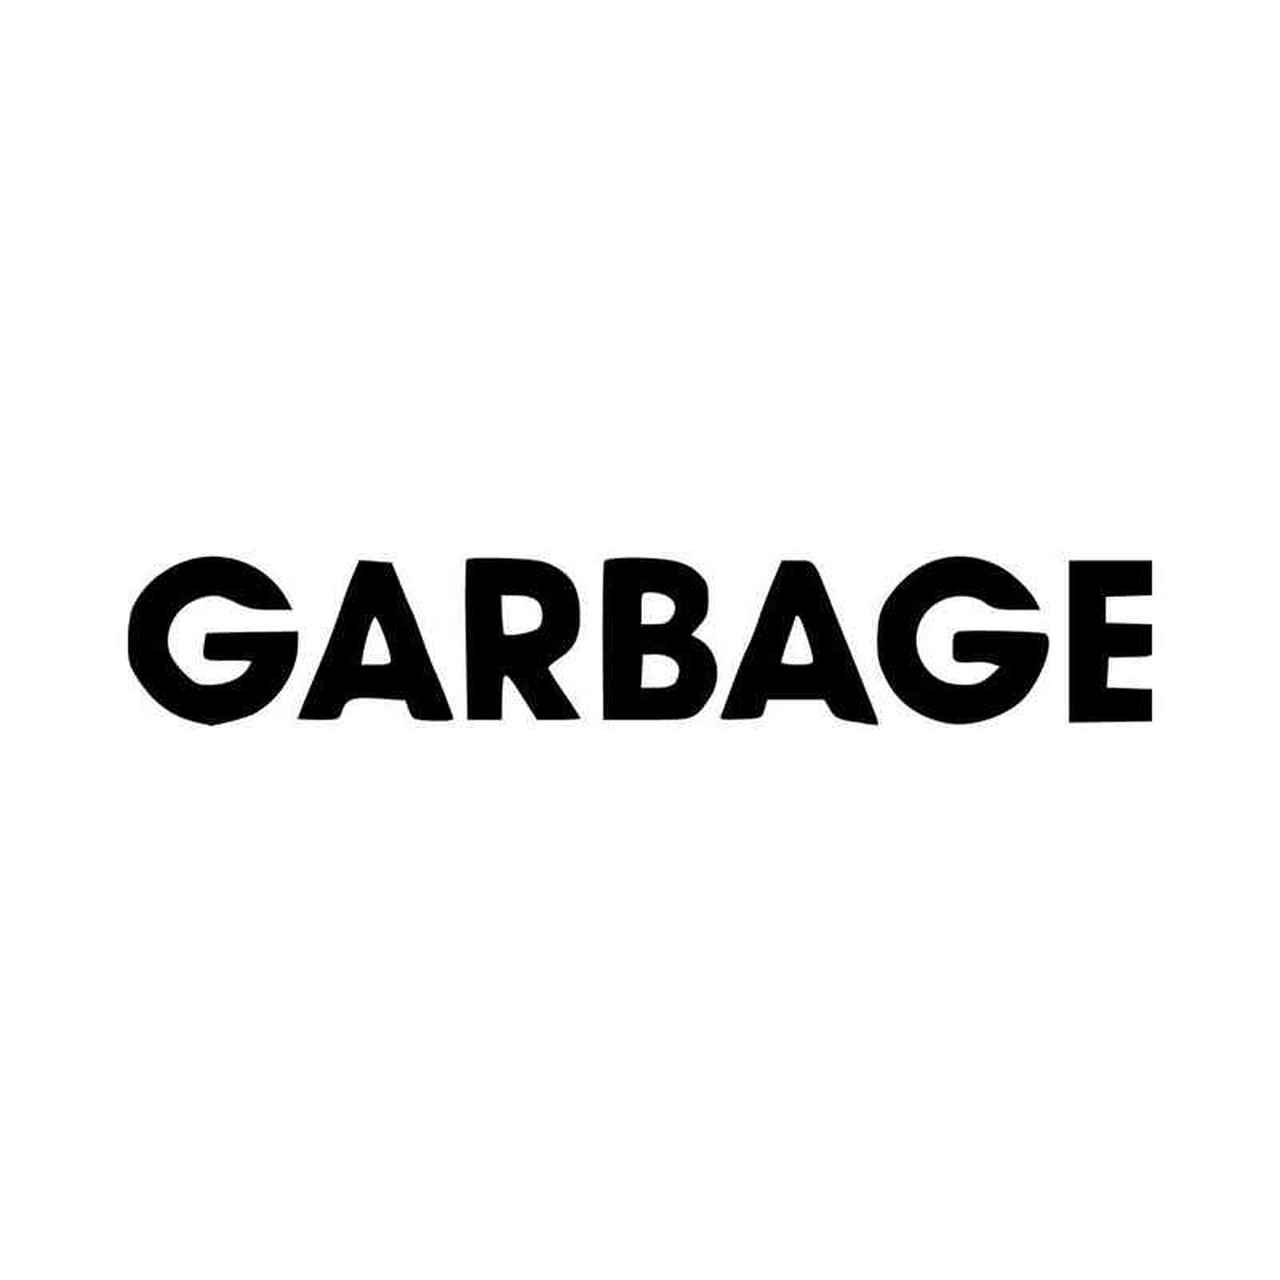 Garbage Logo - Garbage Band Logo Vinyl Decal Sticker